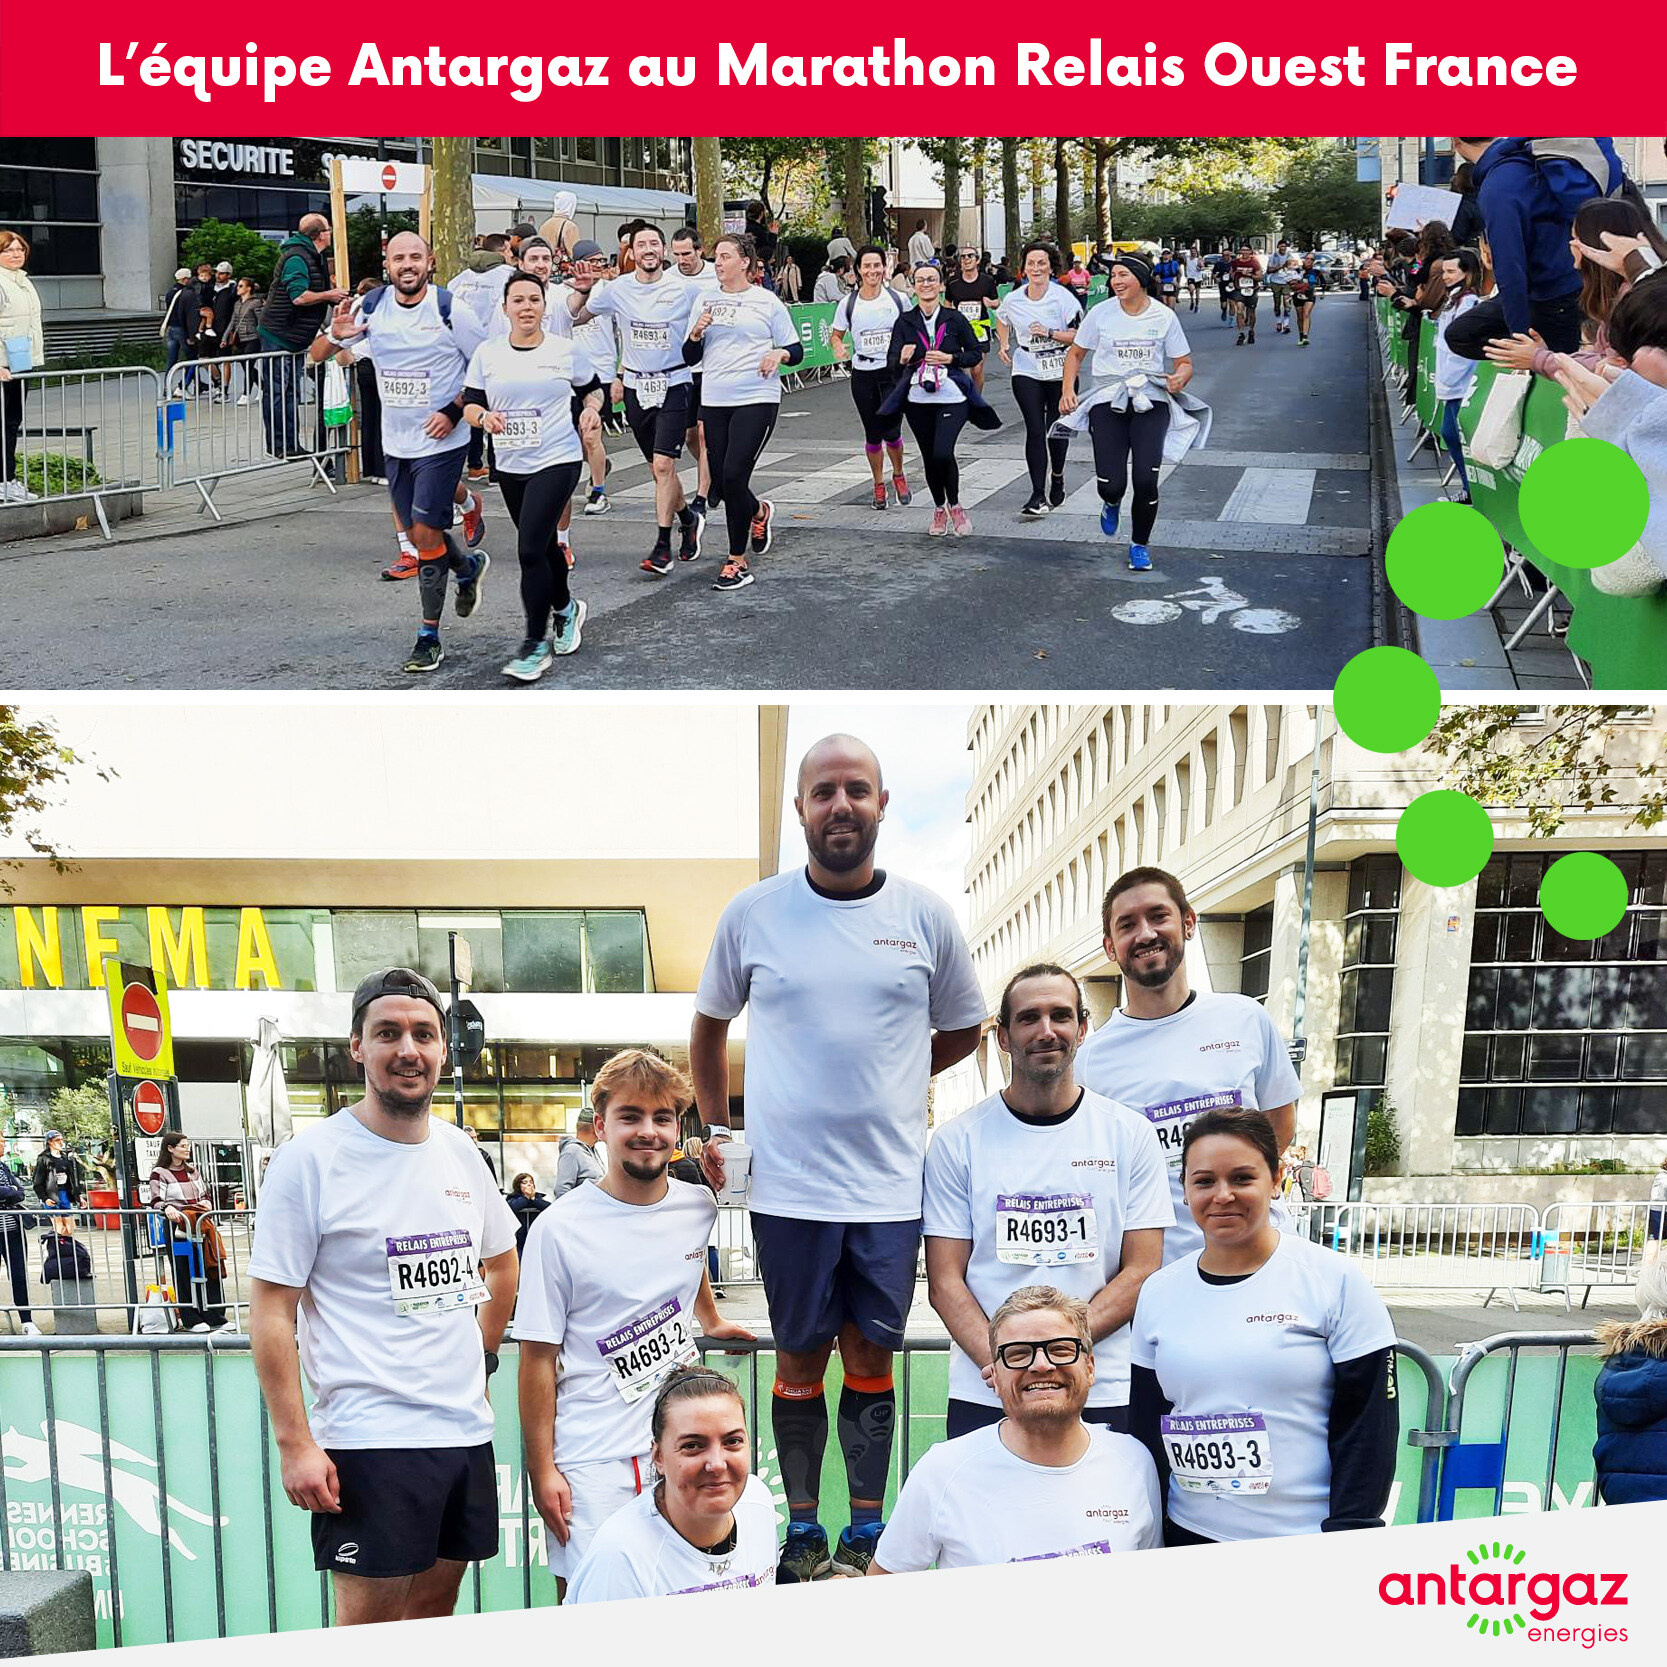 Le Marathon Relais Ouest France